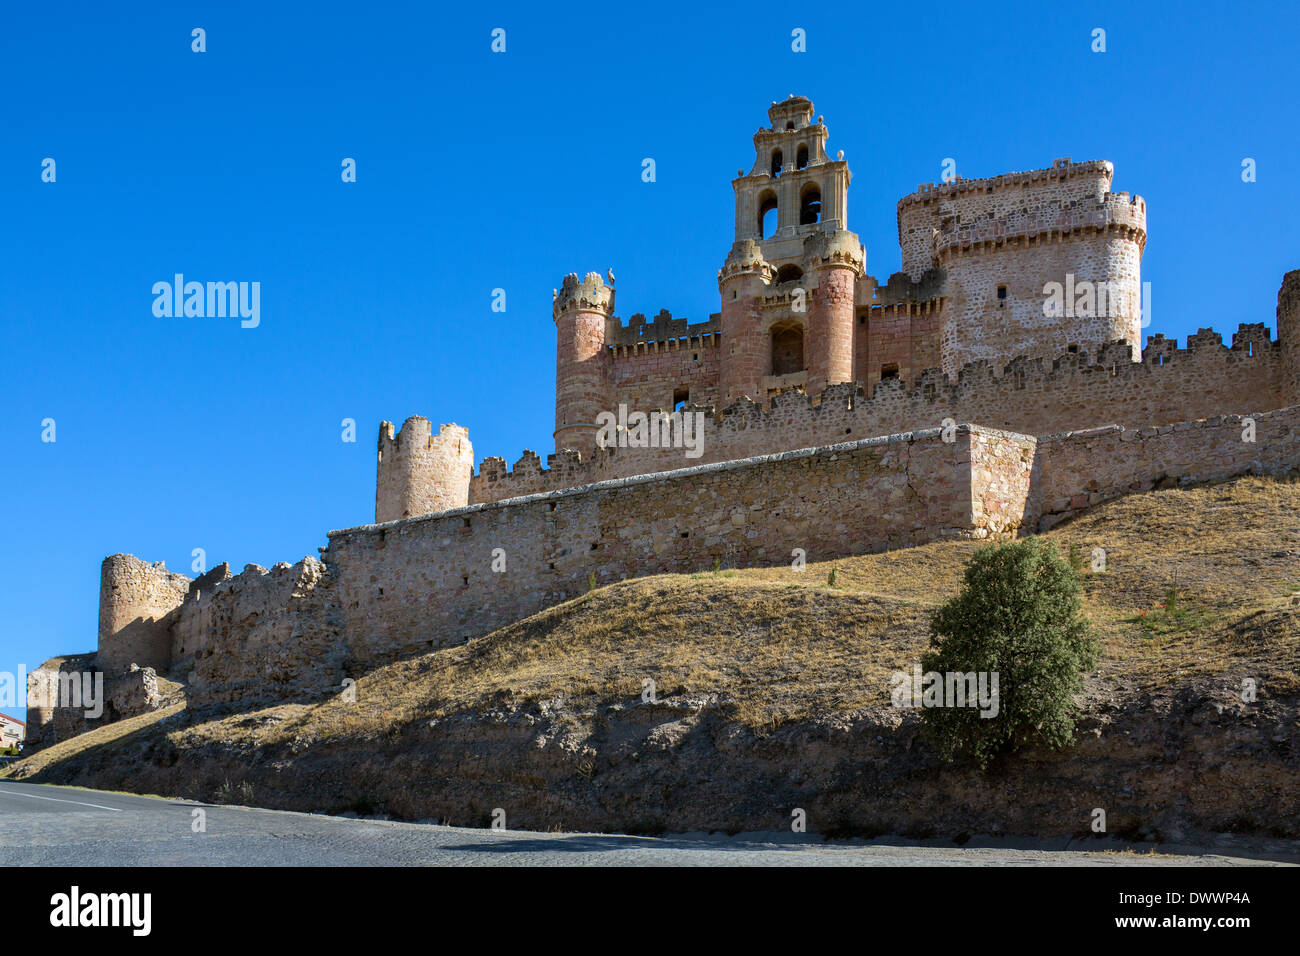 Turegano mittelalterliche Festung in der Nähe von Segovia in der Region Castilla y Leon in Zentralspanien. Stockfoto